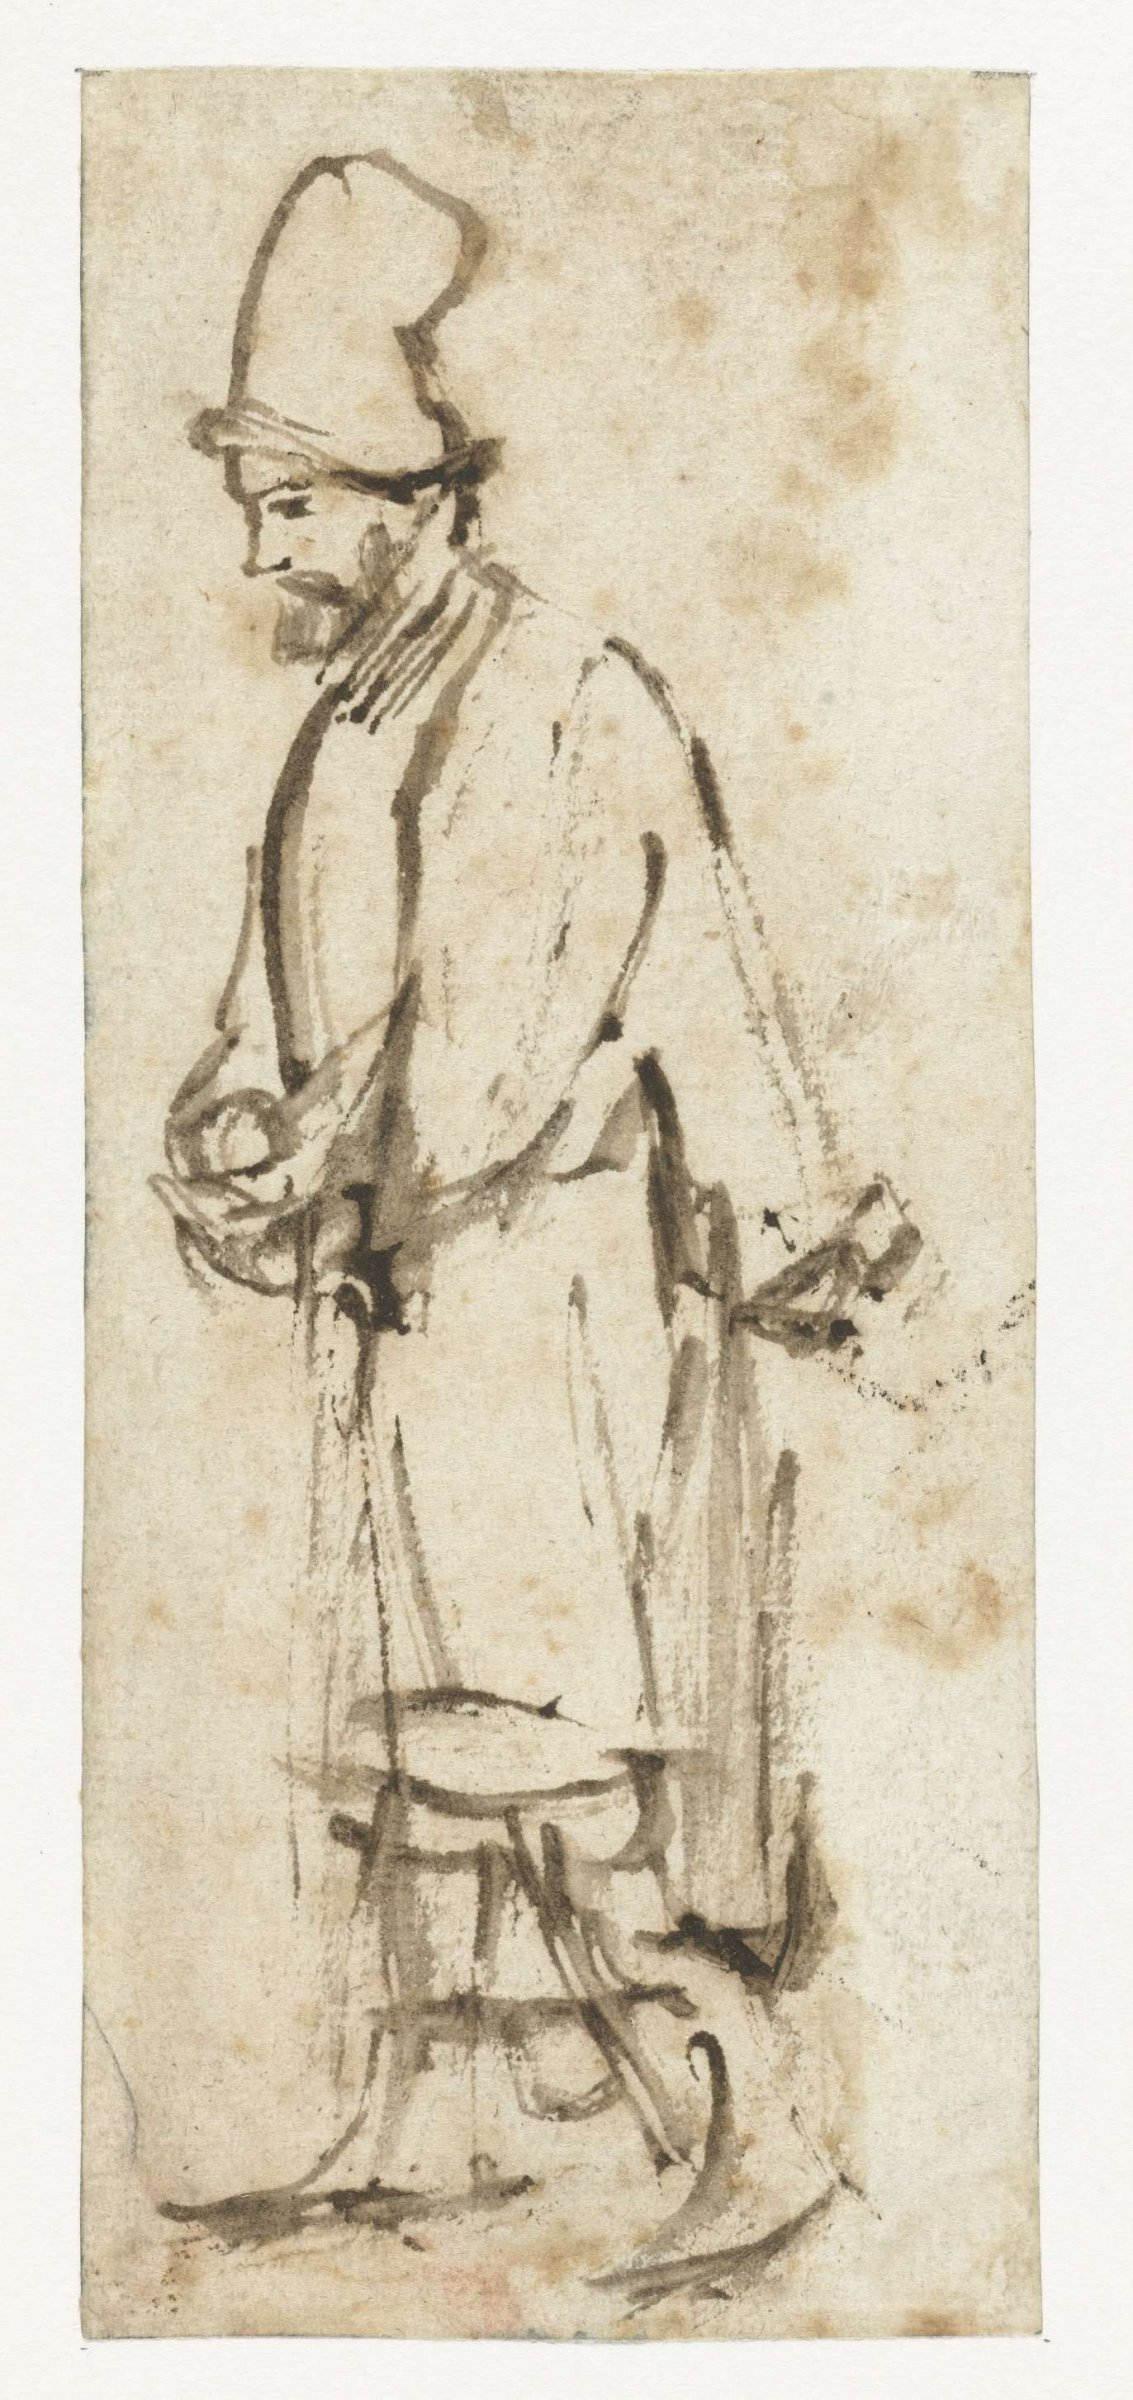 Walking Man with a High Cap, Rembrandt van Rijn, c. 1655 - c. 1660